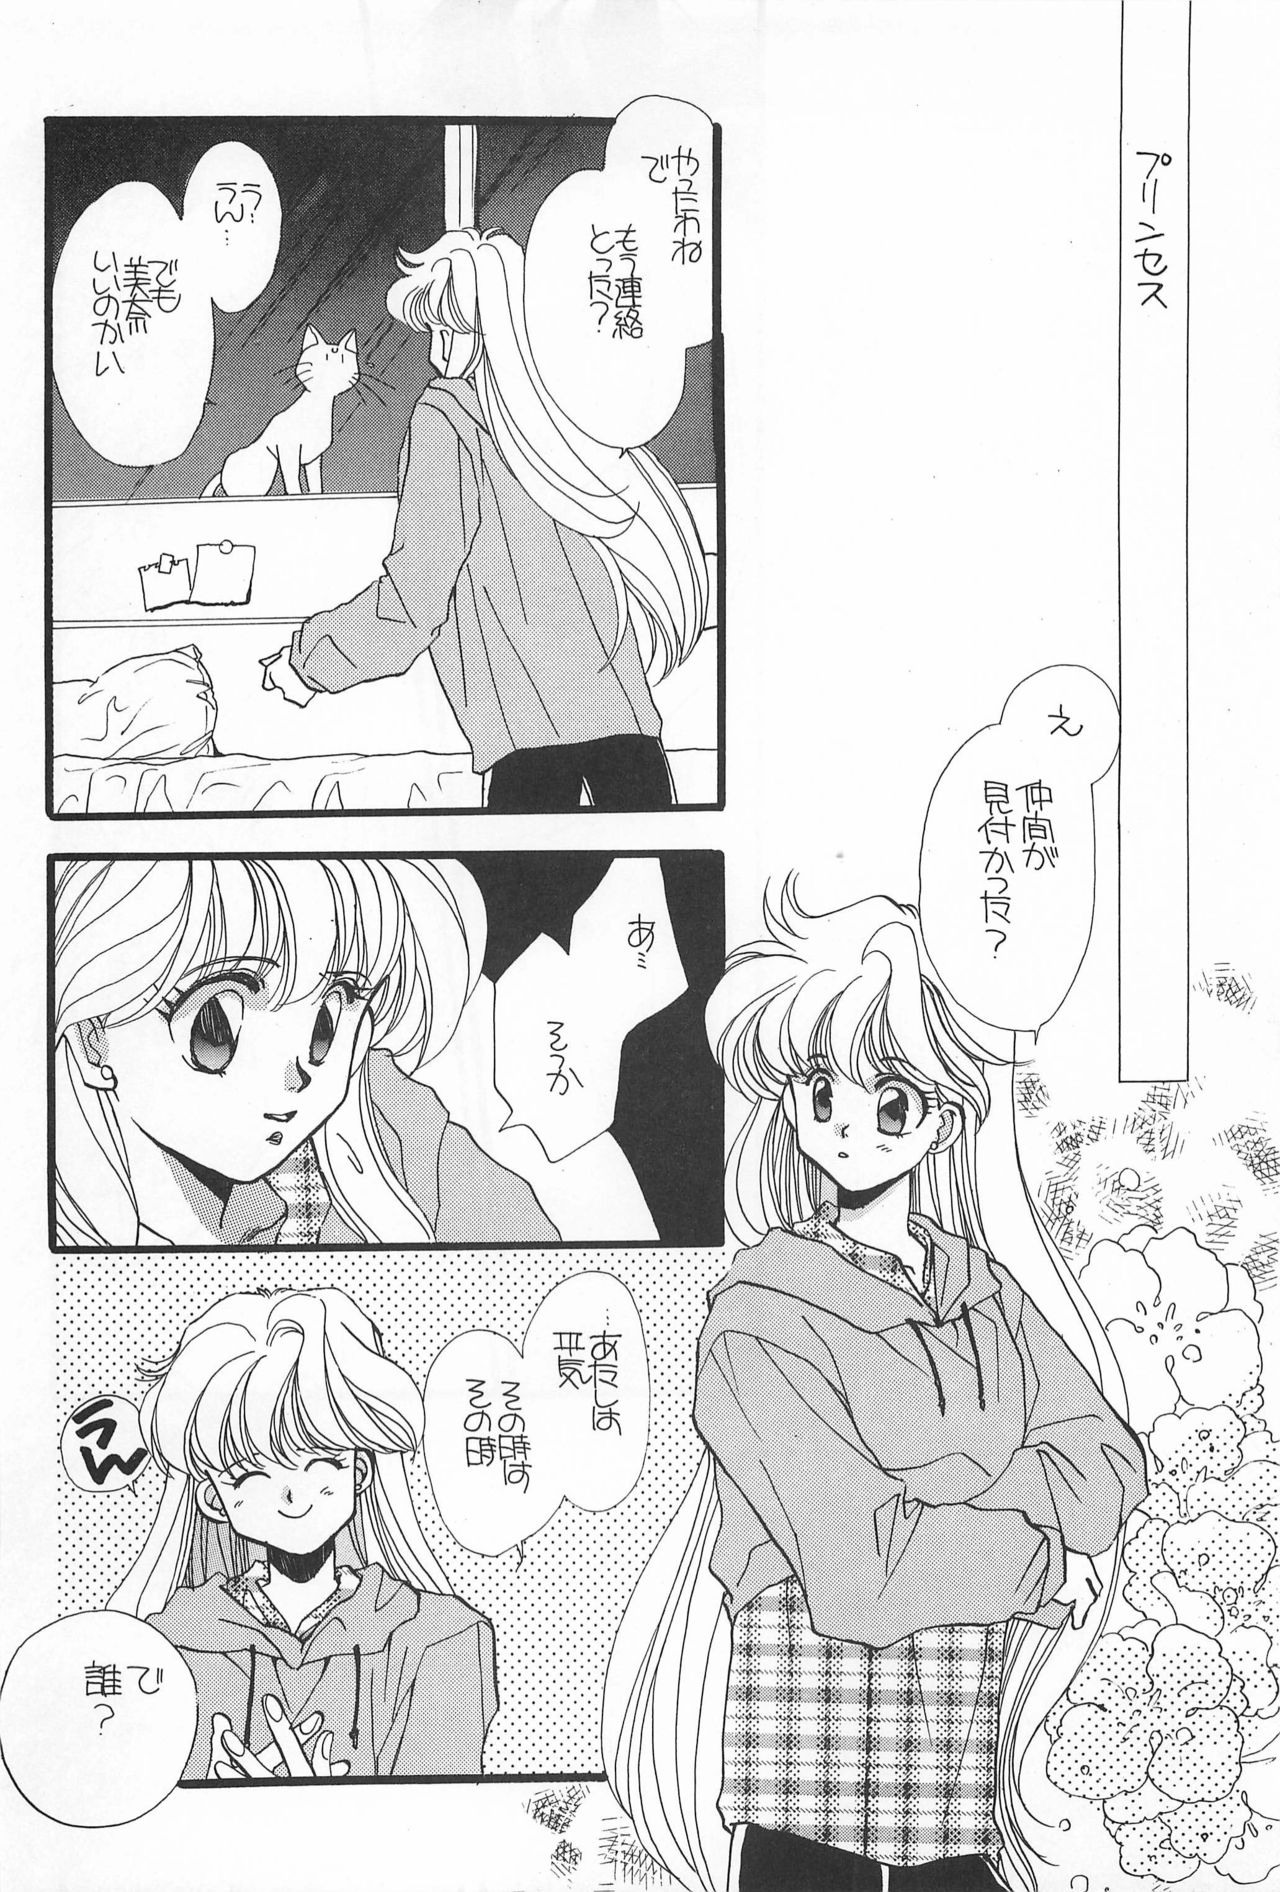 [Hello World (Muttri Moony)] Kaze no You ni Yume no You ni - Sailor Moon Collection (Sailor Moon) 79